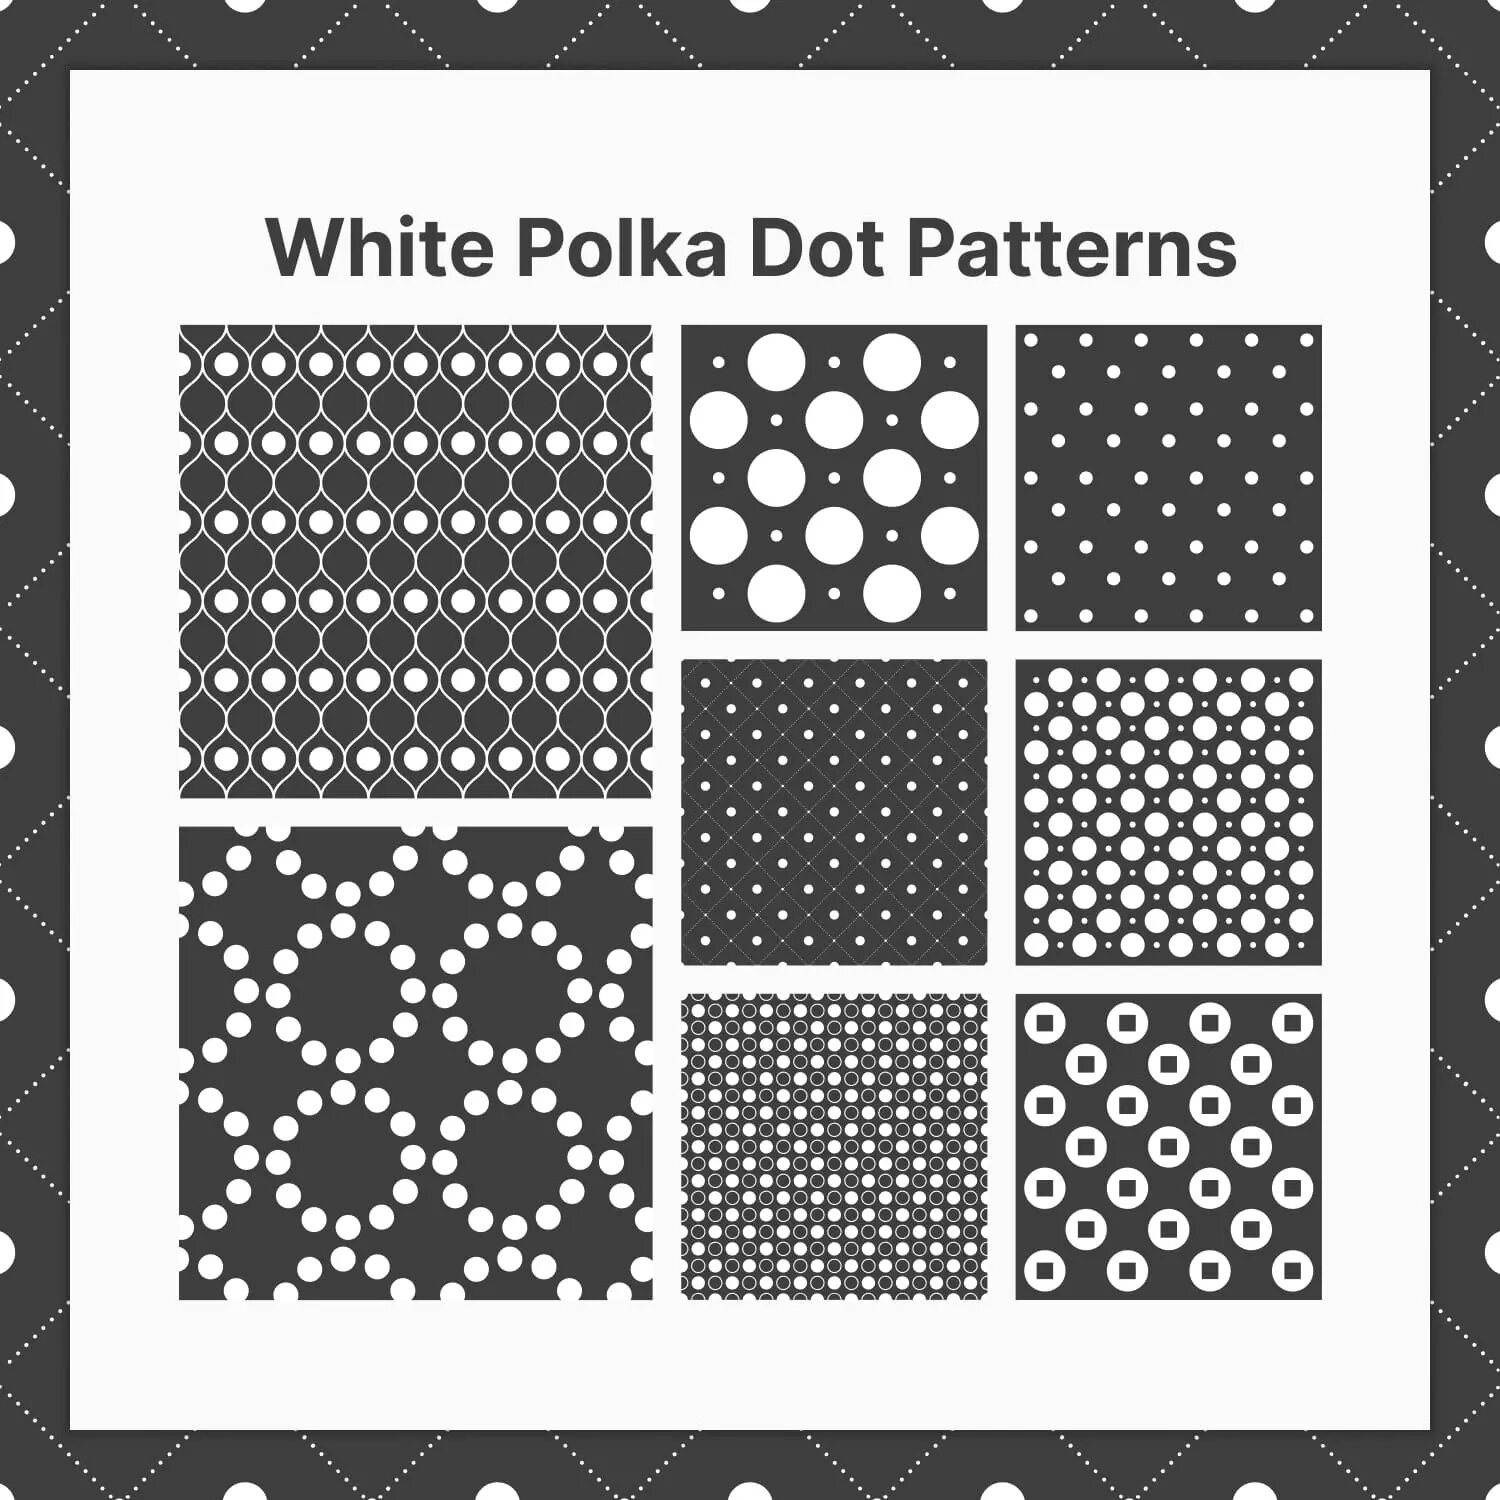 White Polka Dot Patterns Preview 2.